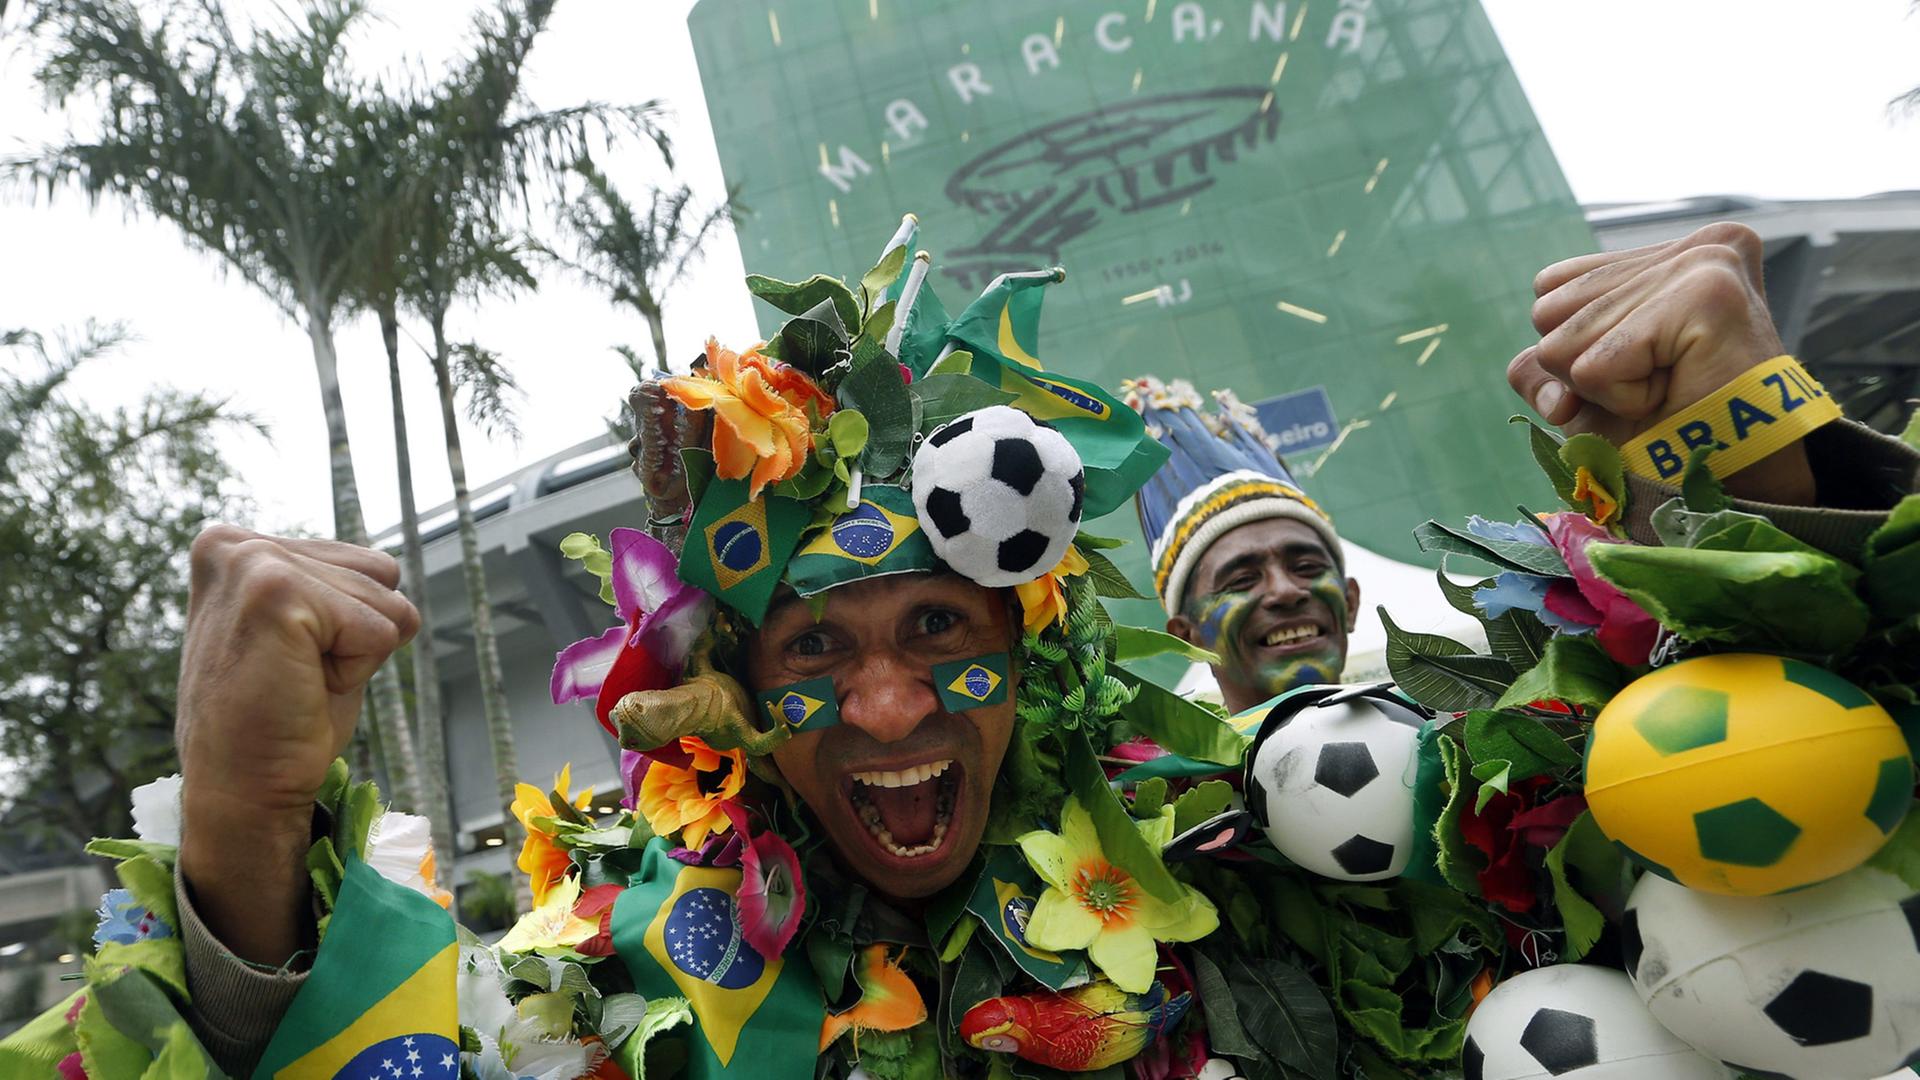 Brasilianische Fußball-Fans vor dem Maracana-Stadion in Rio de Janeiro